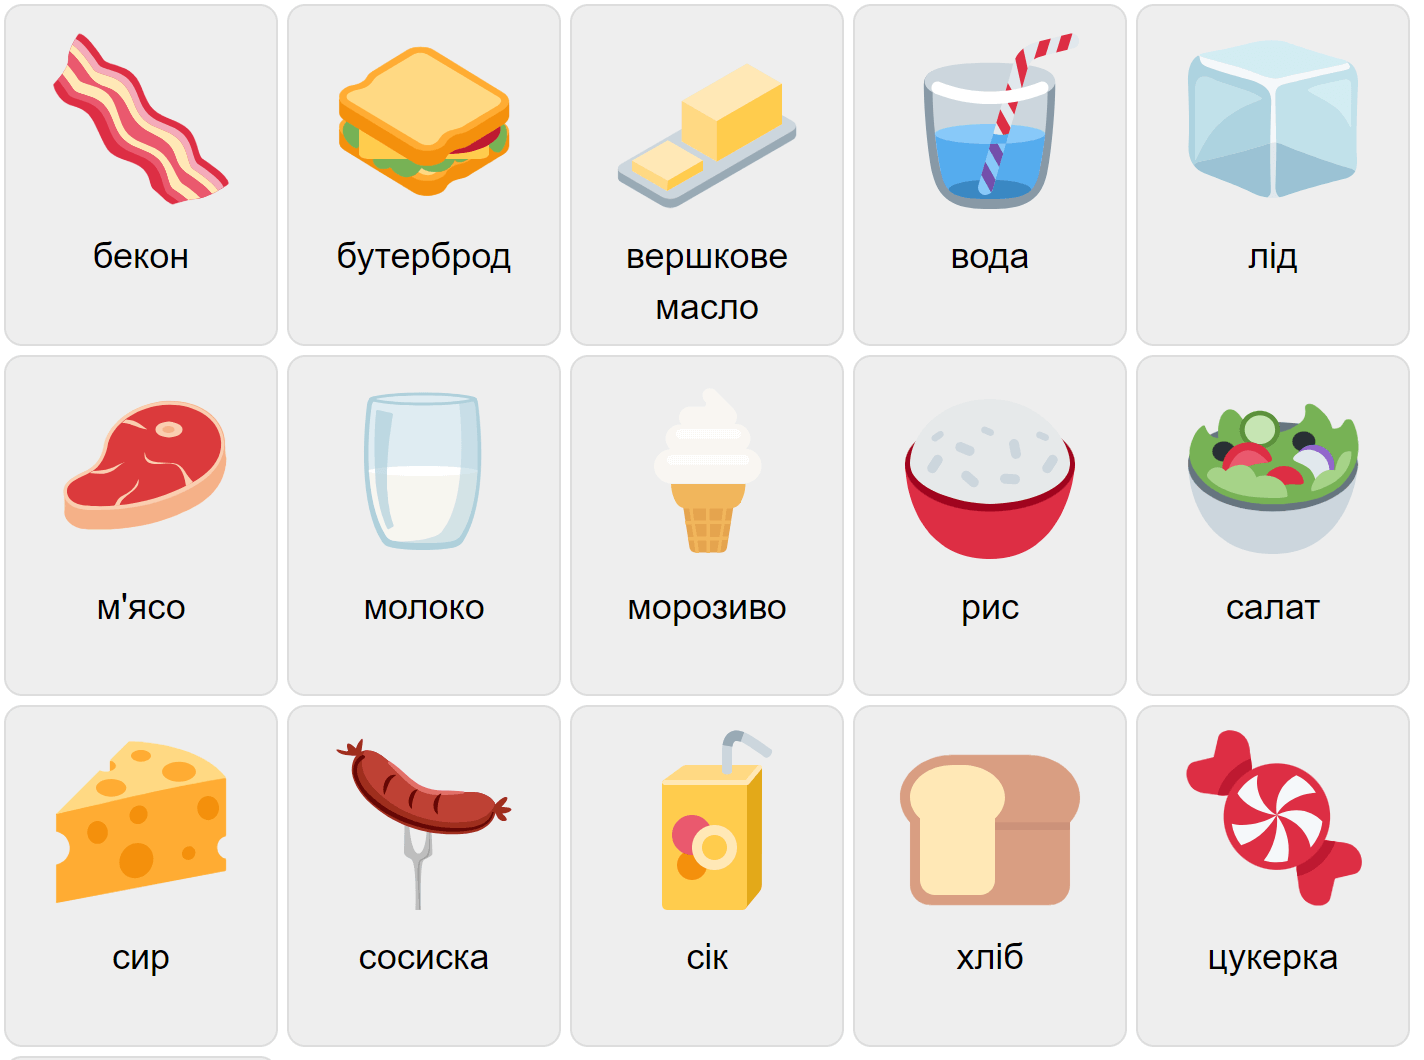 Food in Ukrainian